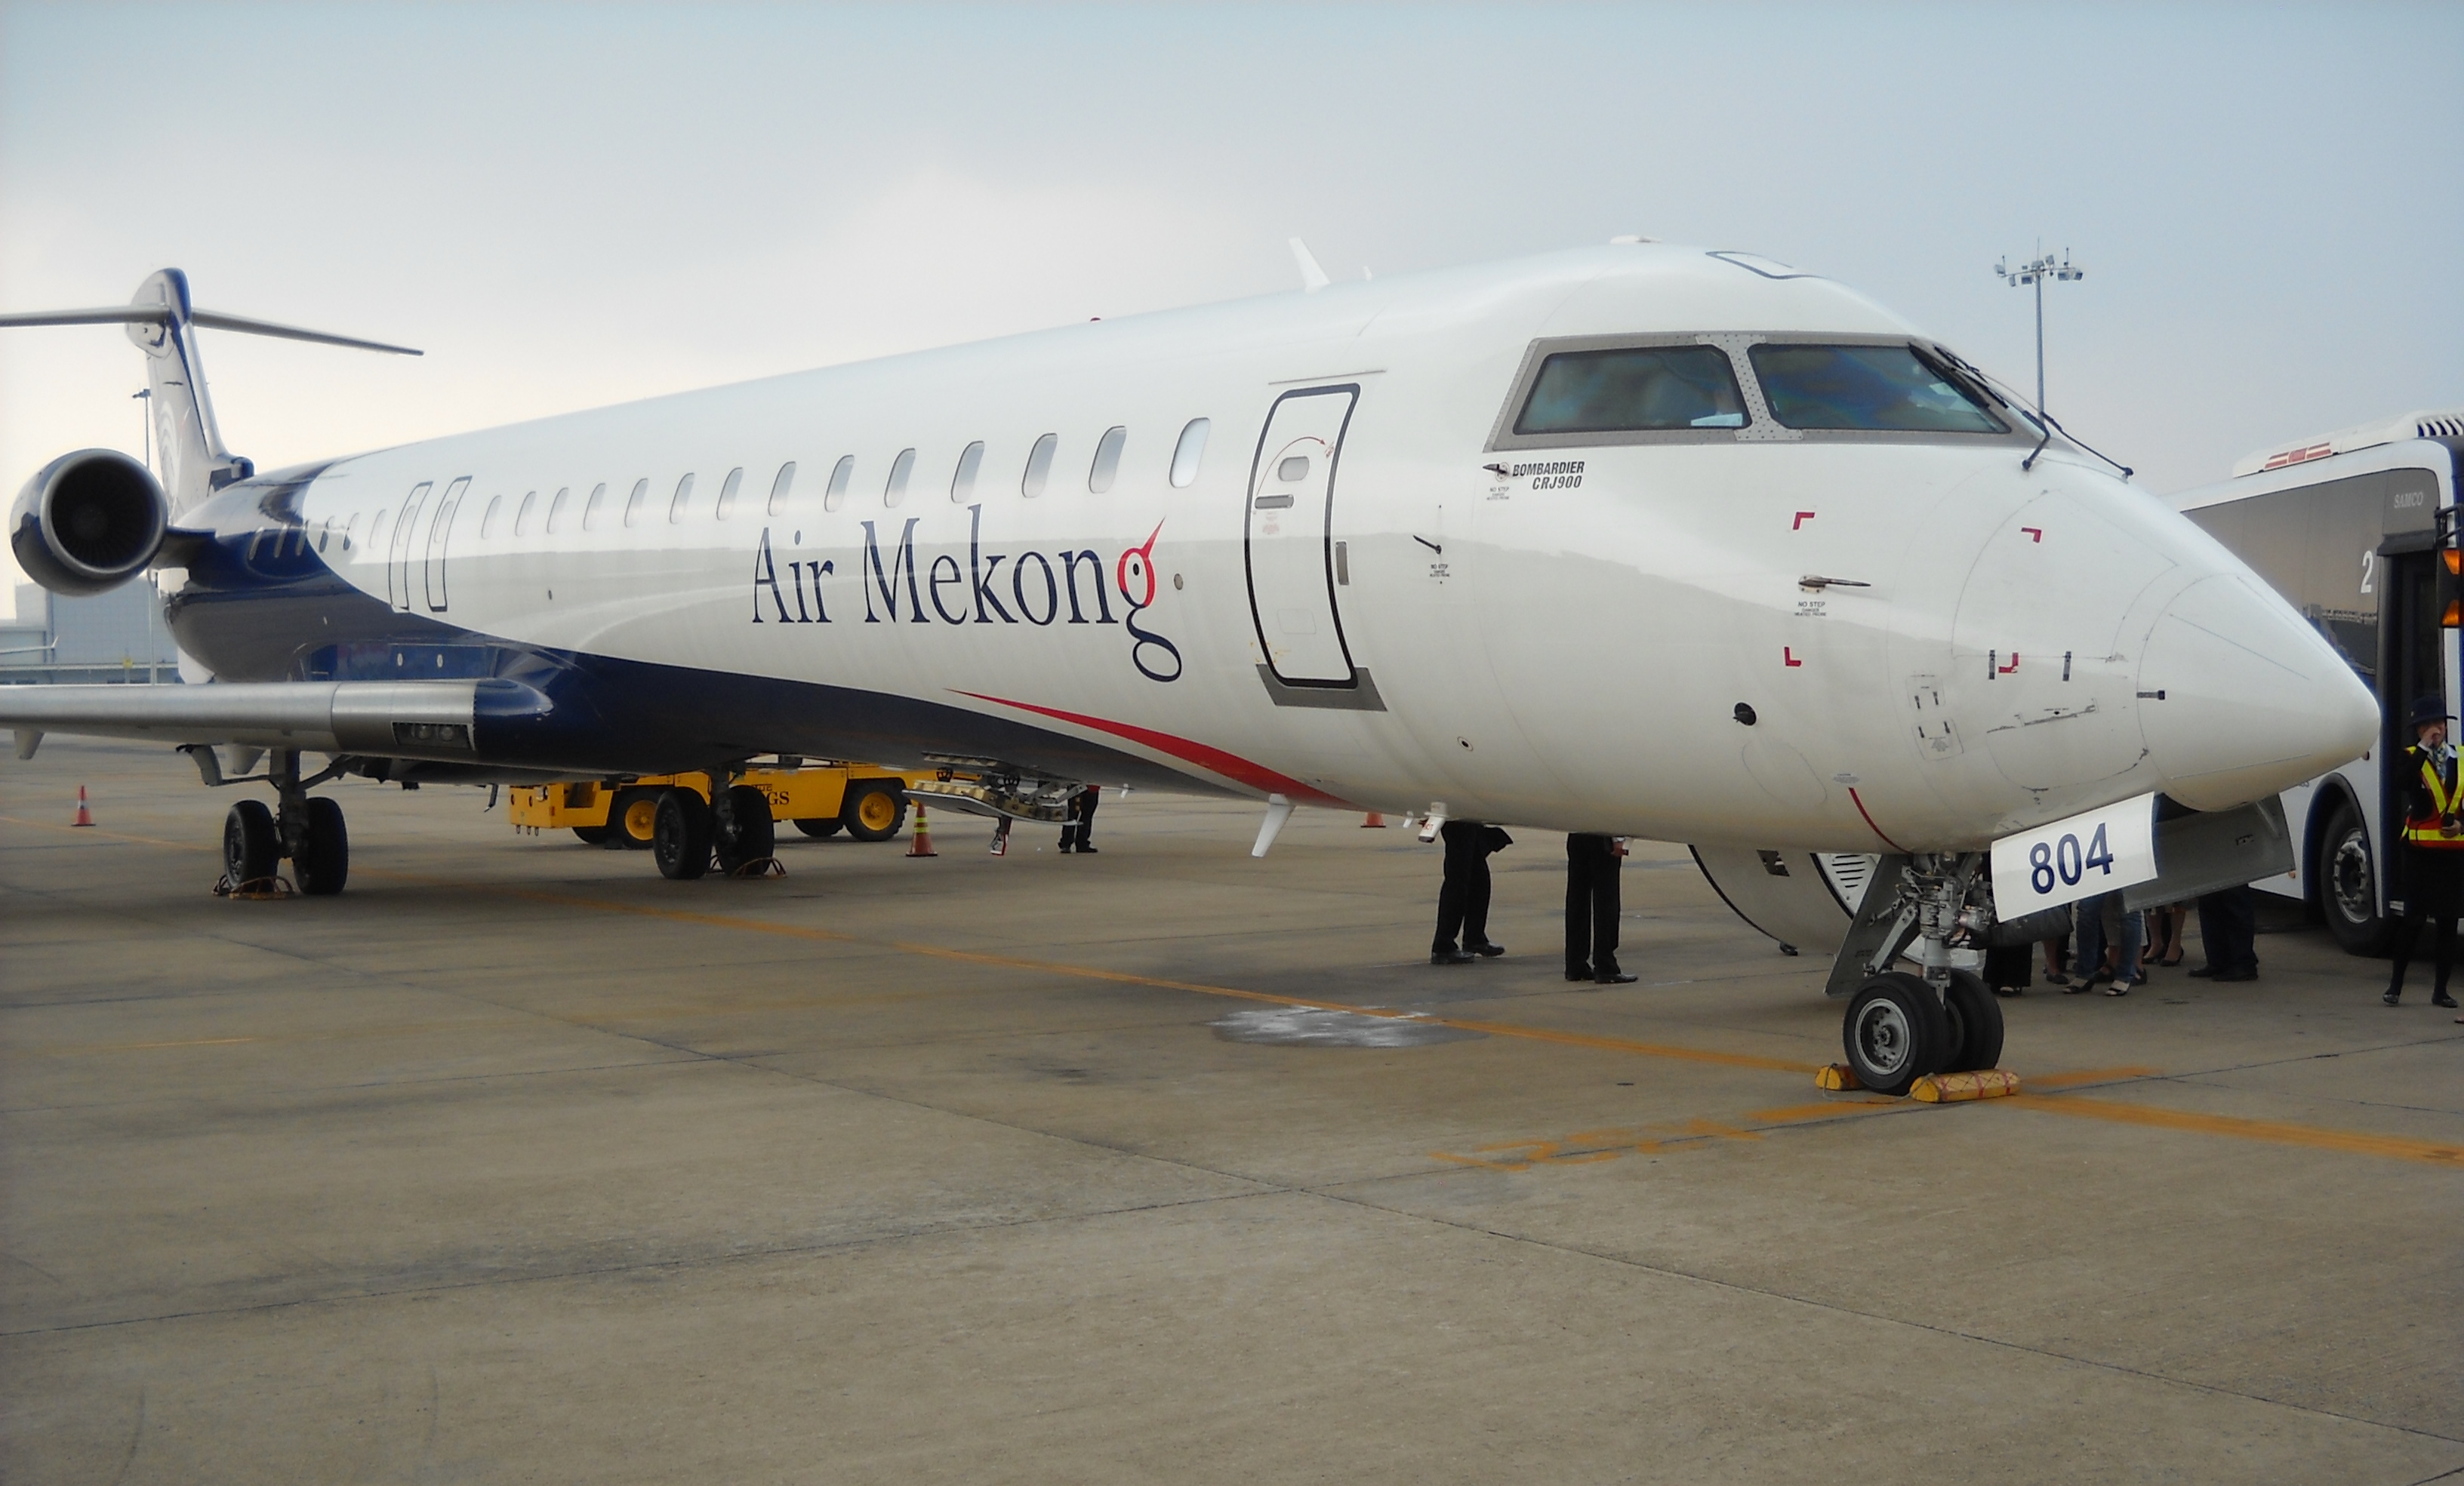 Hãng hàng không Mekong đã chính thức bị rút giấy phép